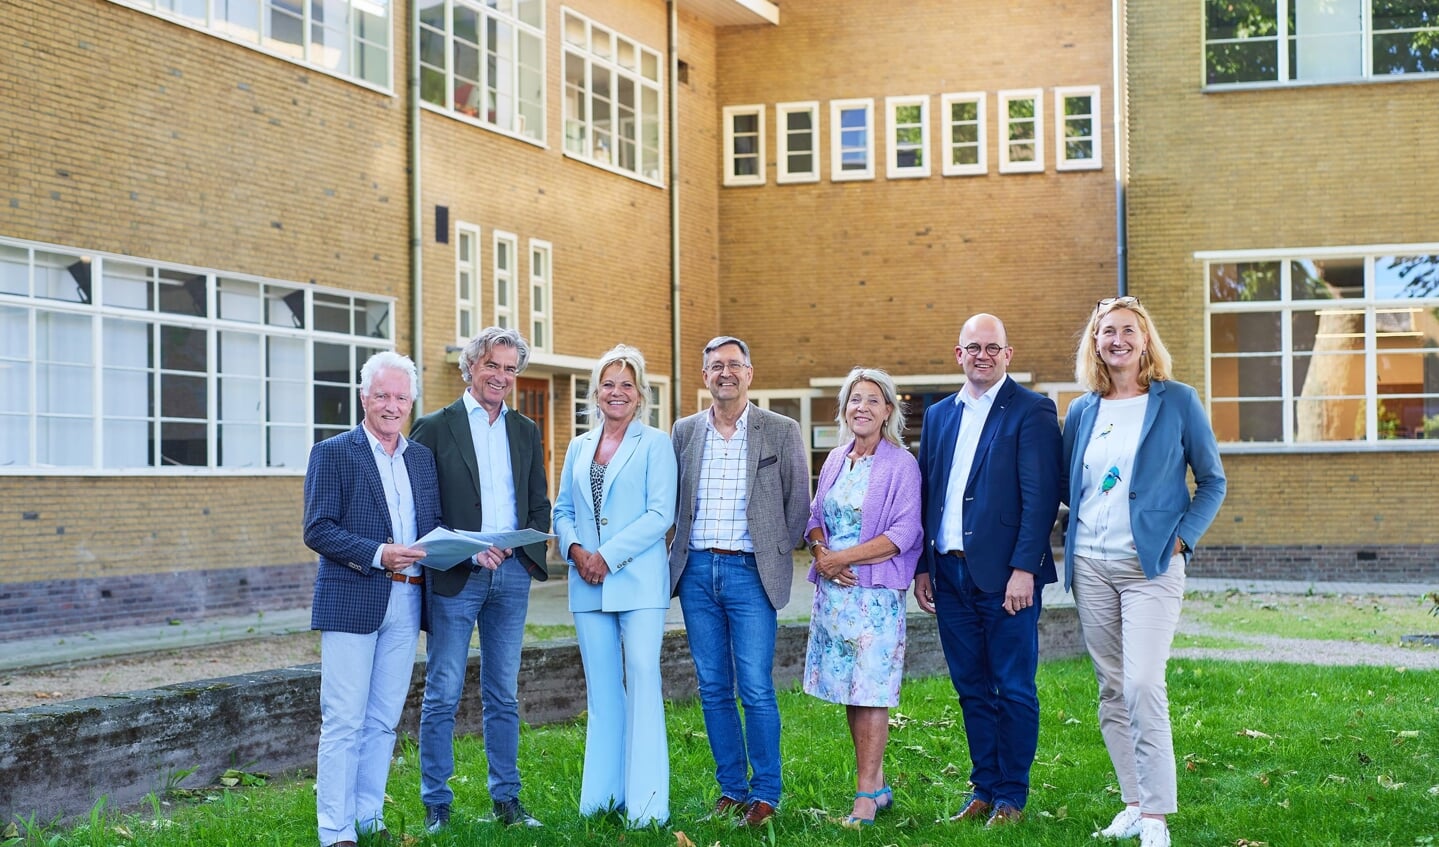 V.l.n.r. Gijs van Rozendaal; Geert de Wit; Annemie Martens; Nol van Beurden; Carin Zandbergen; Marcel van den Hoven en Harriëtte Koning